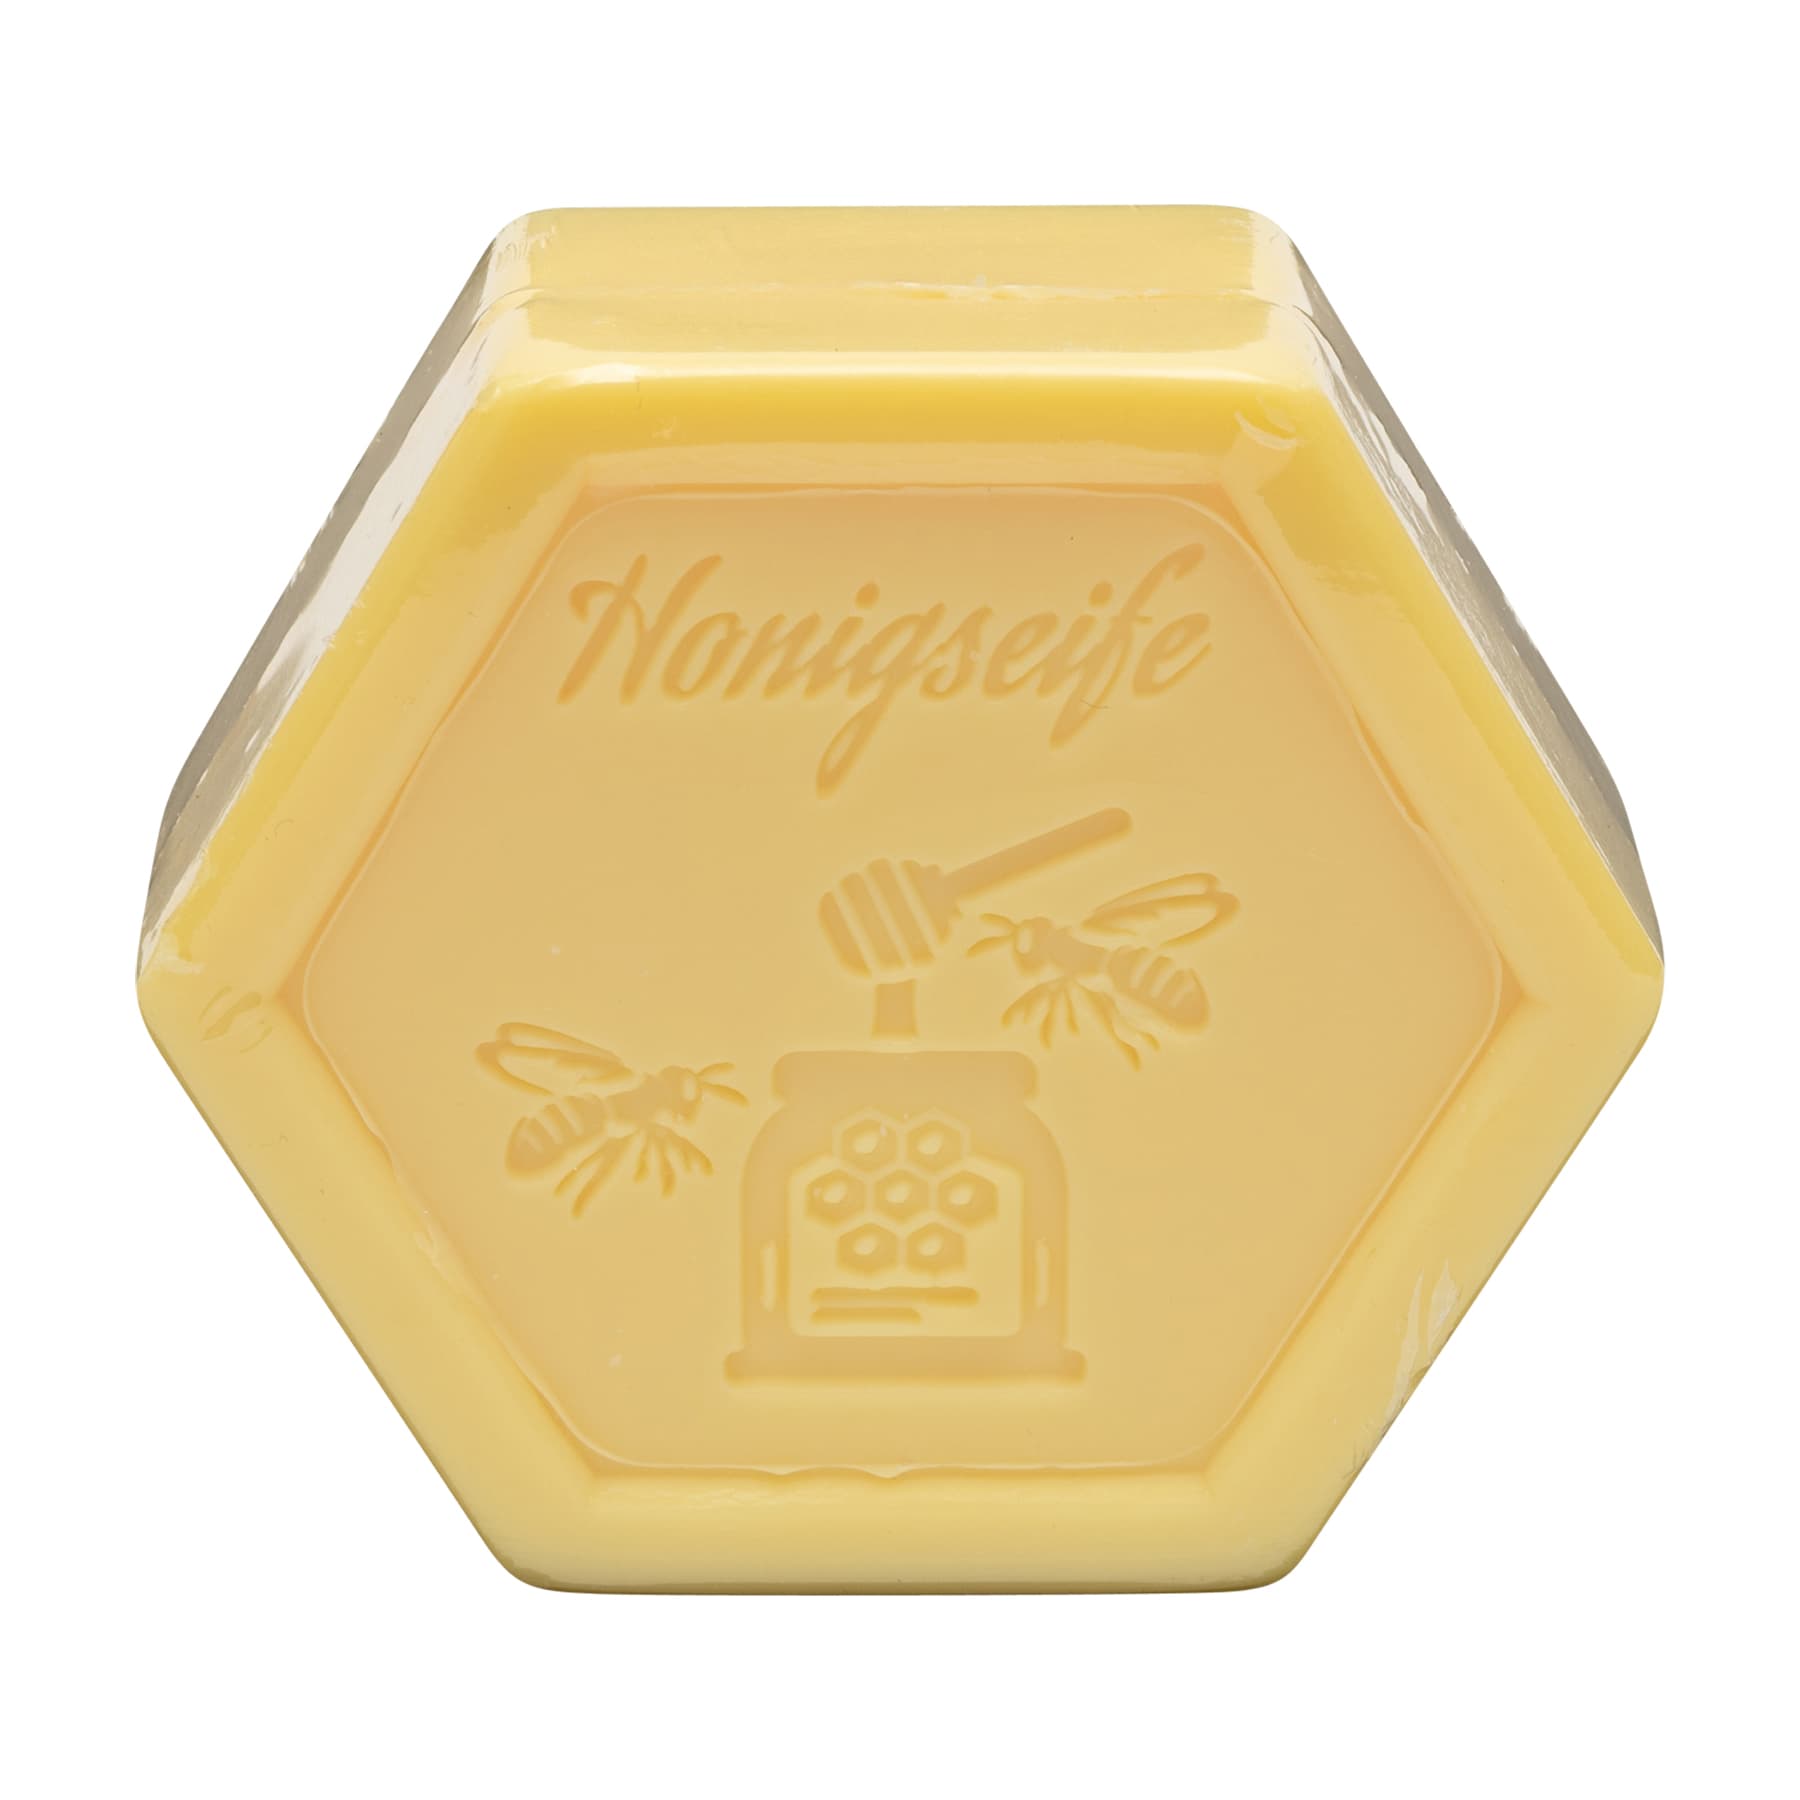 Honigseife 100 g in Sechseckform, foliert, mit dem beigelegten Etikett